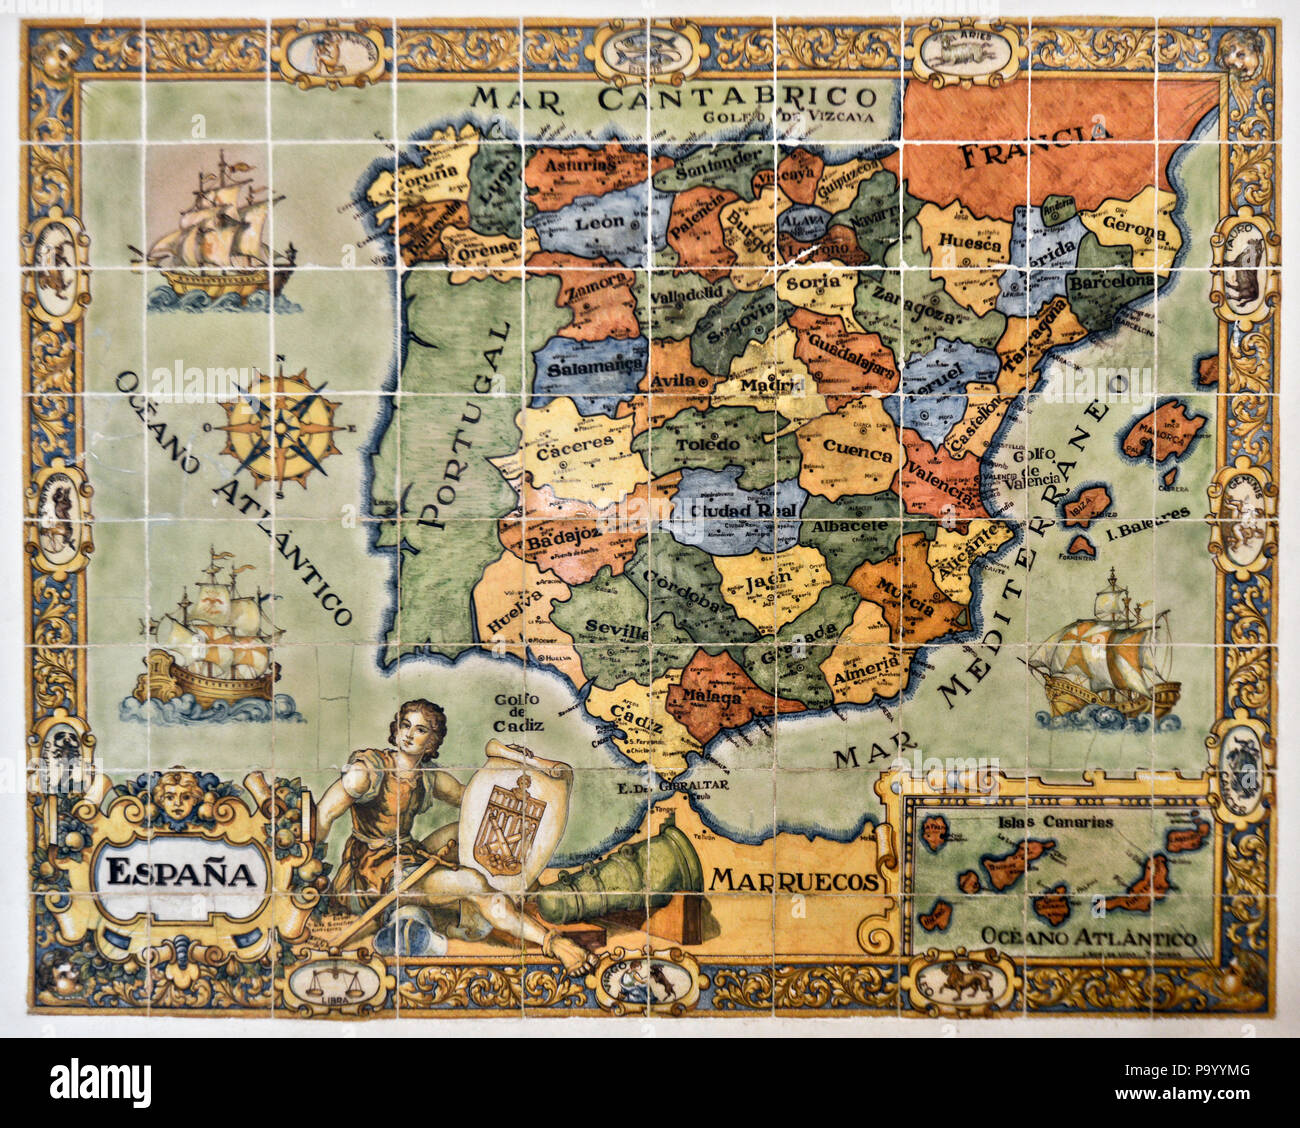 Mapa españa medieval fotografías e imágenes de alta resolución - Alamy